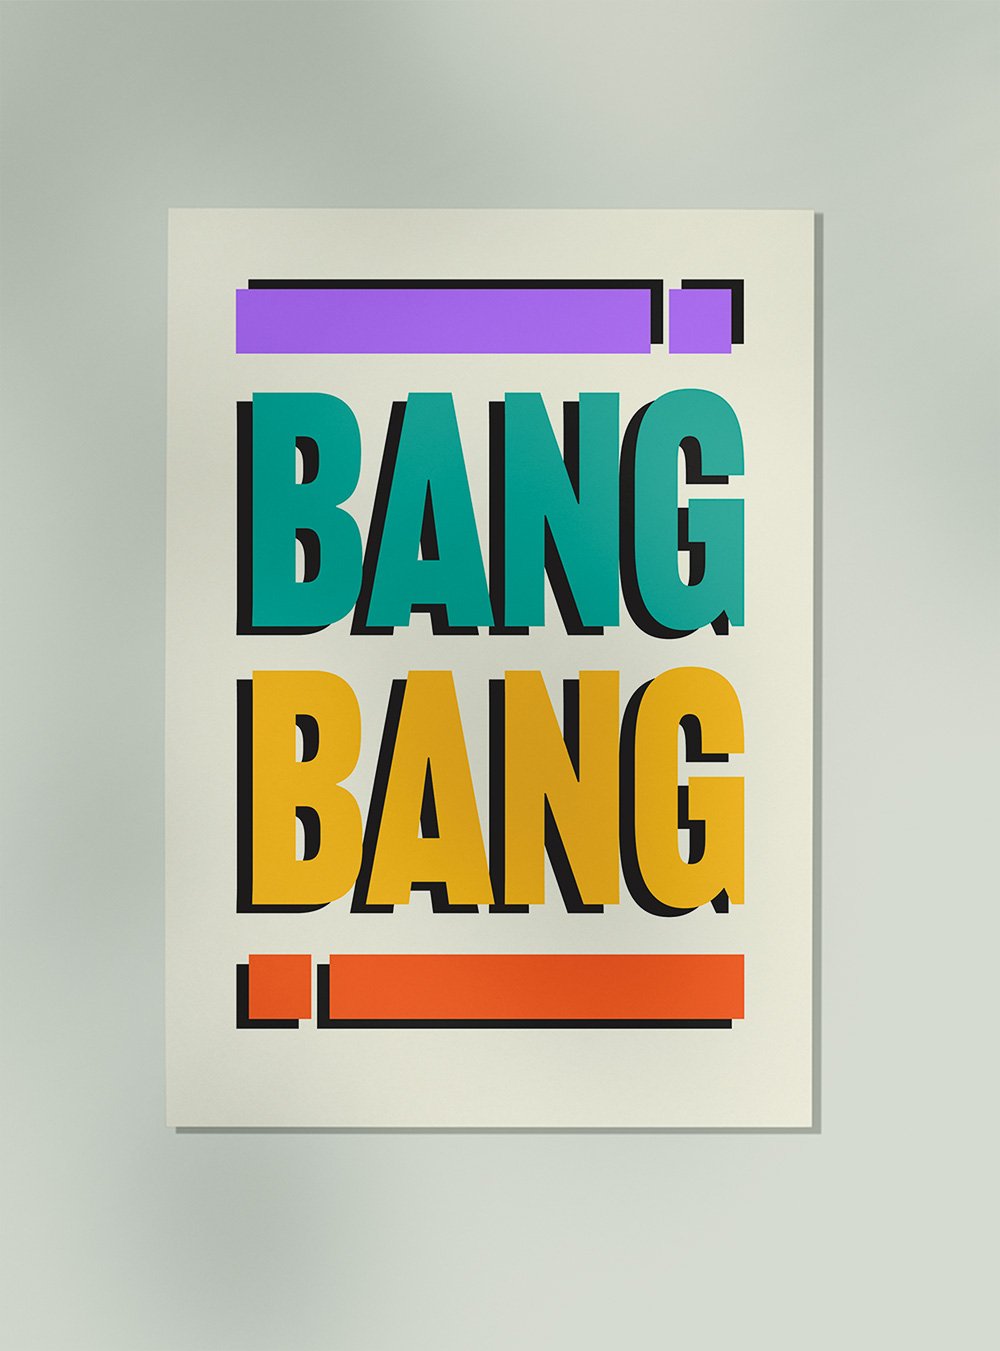 Bang Bang Art Print